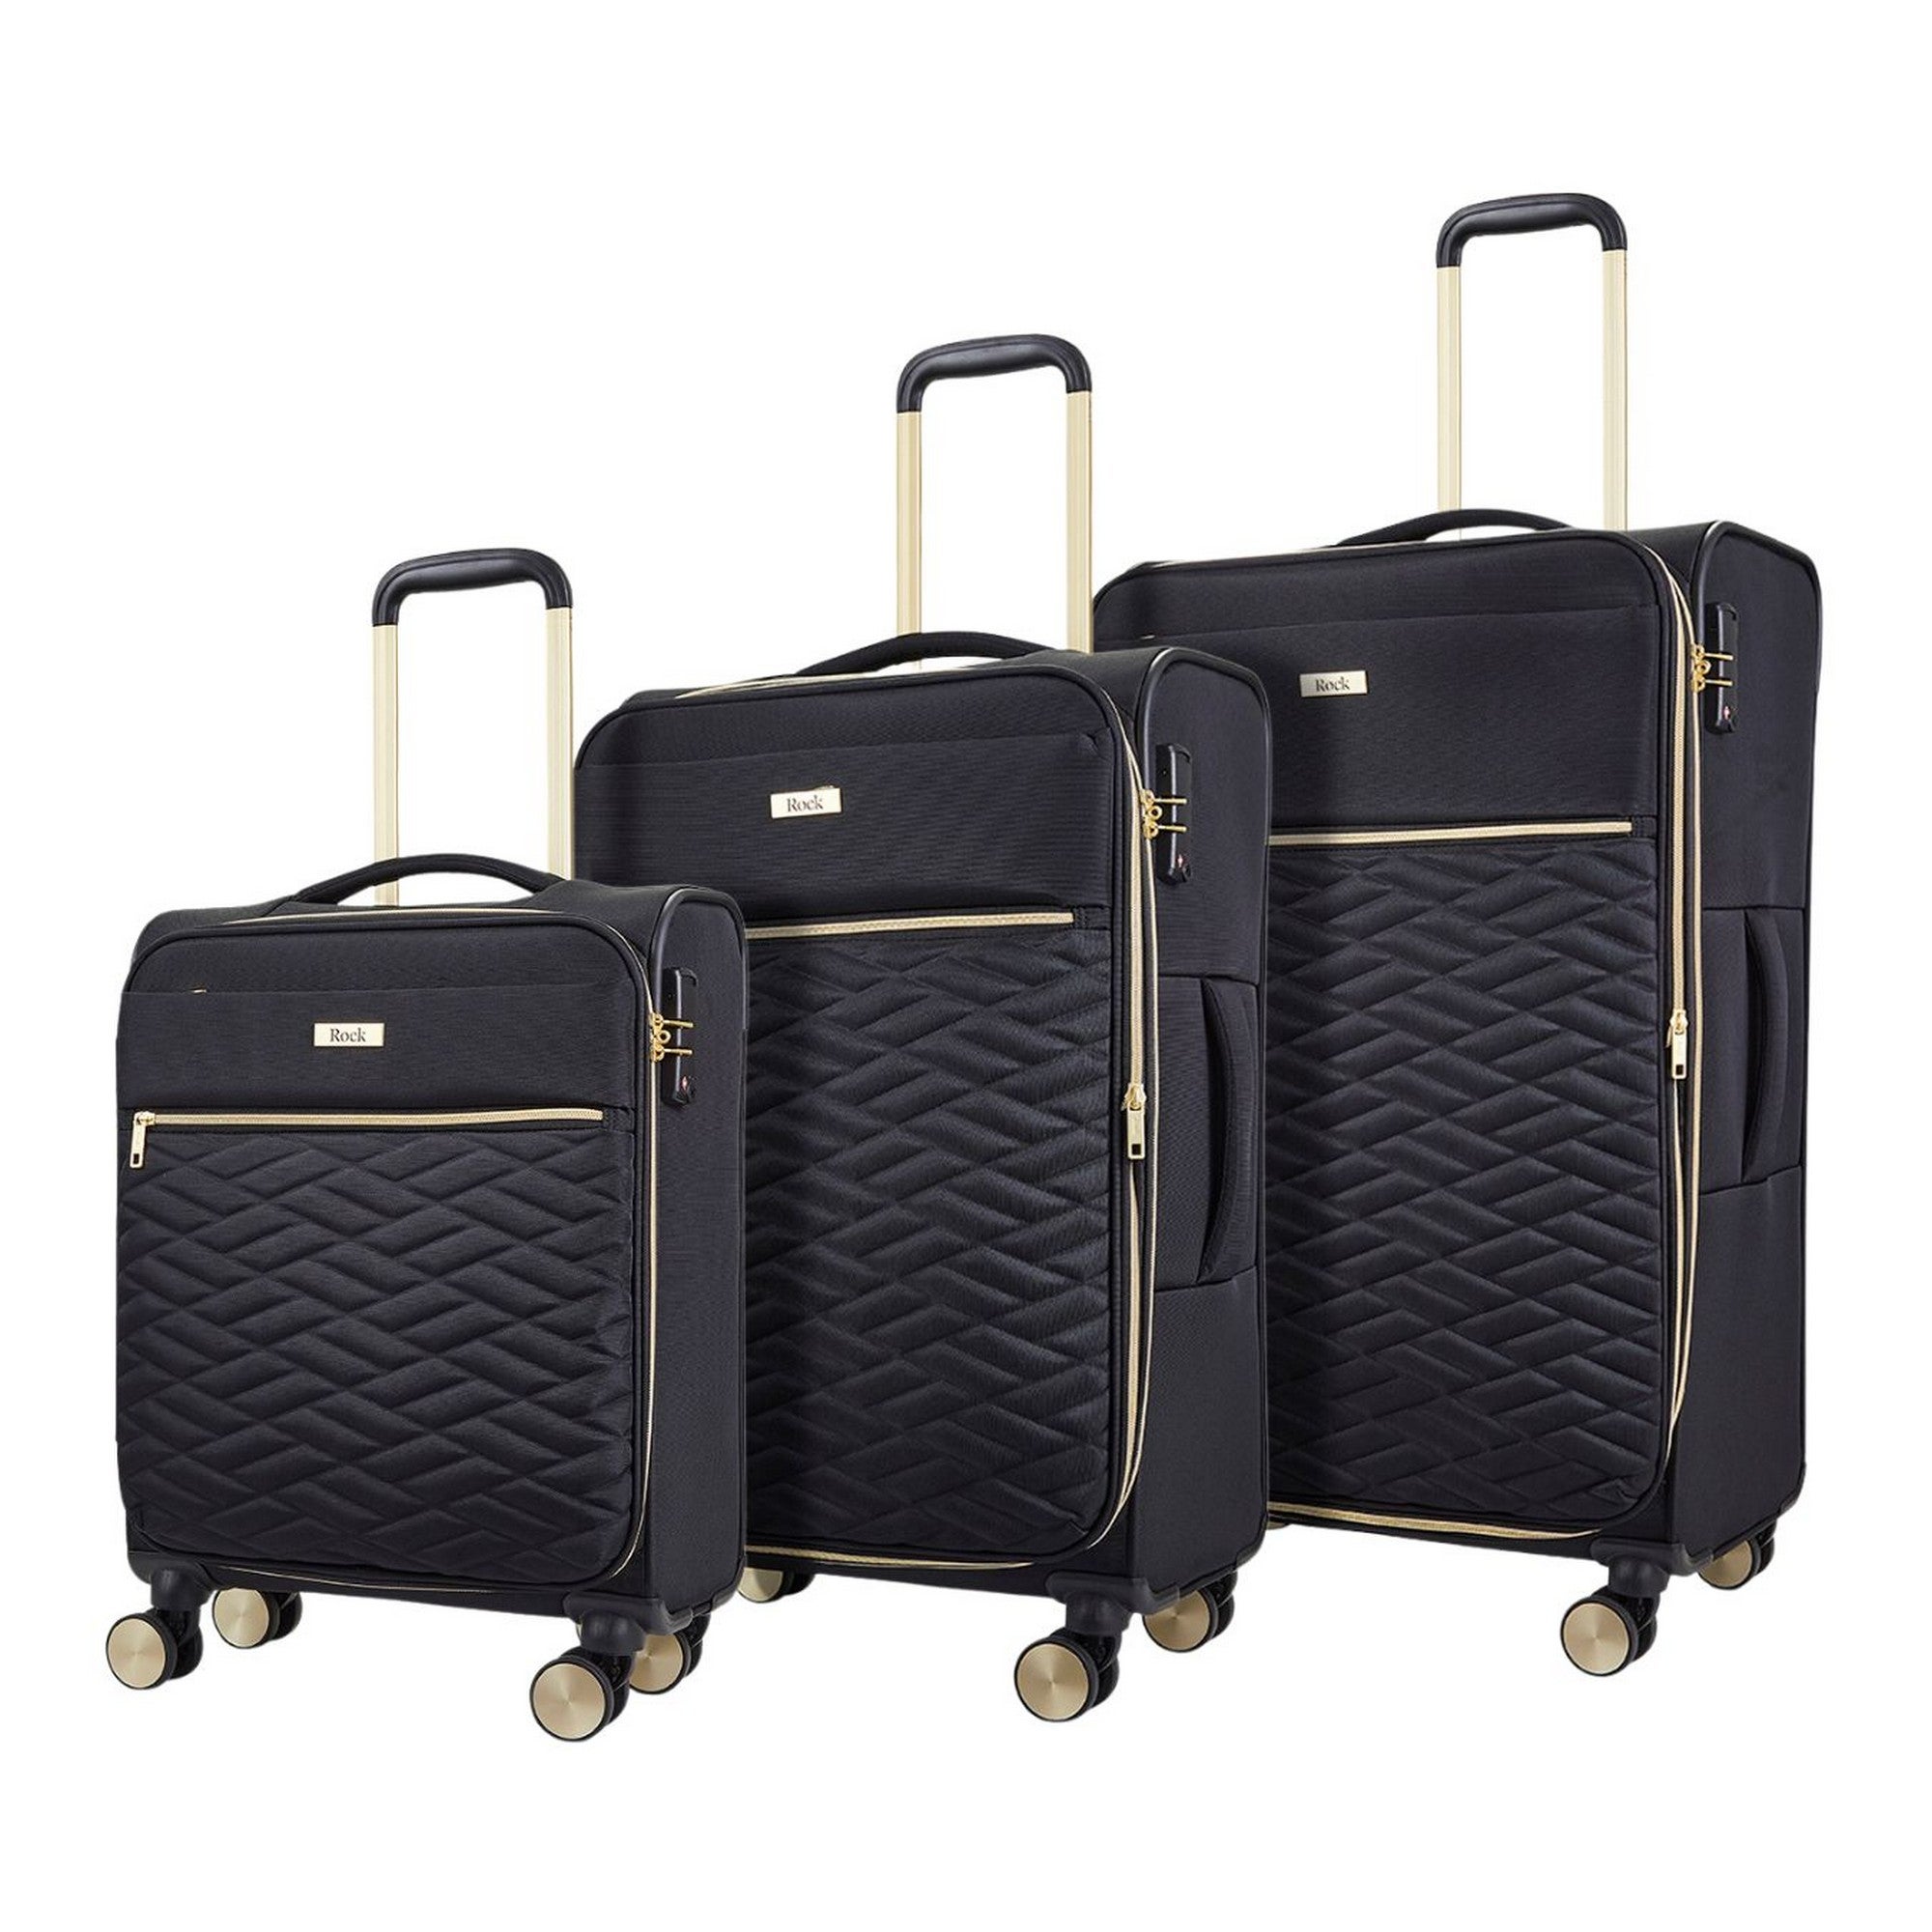 Rock Luggage Sloane Set of 3 Suitcases